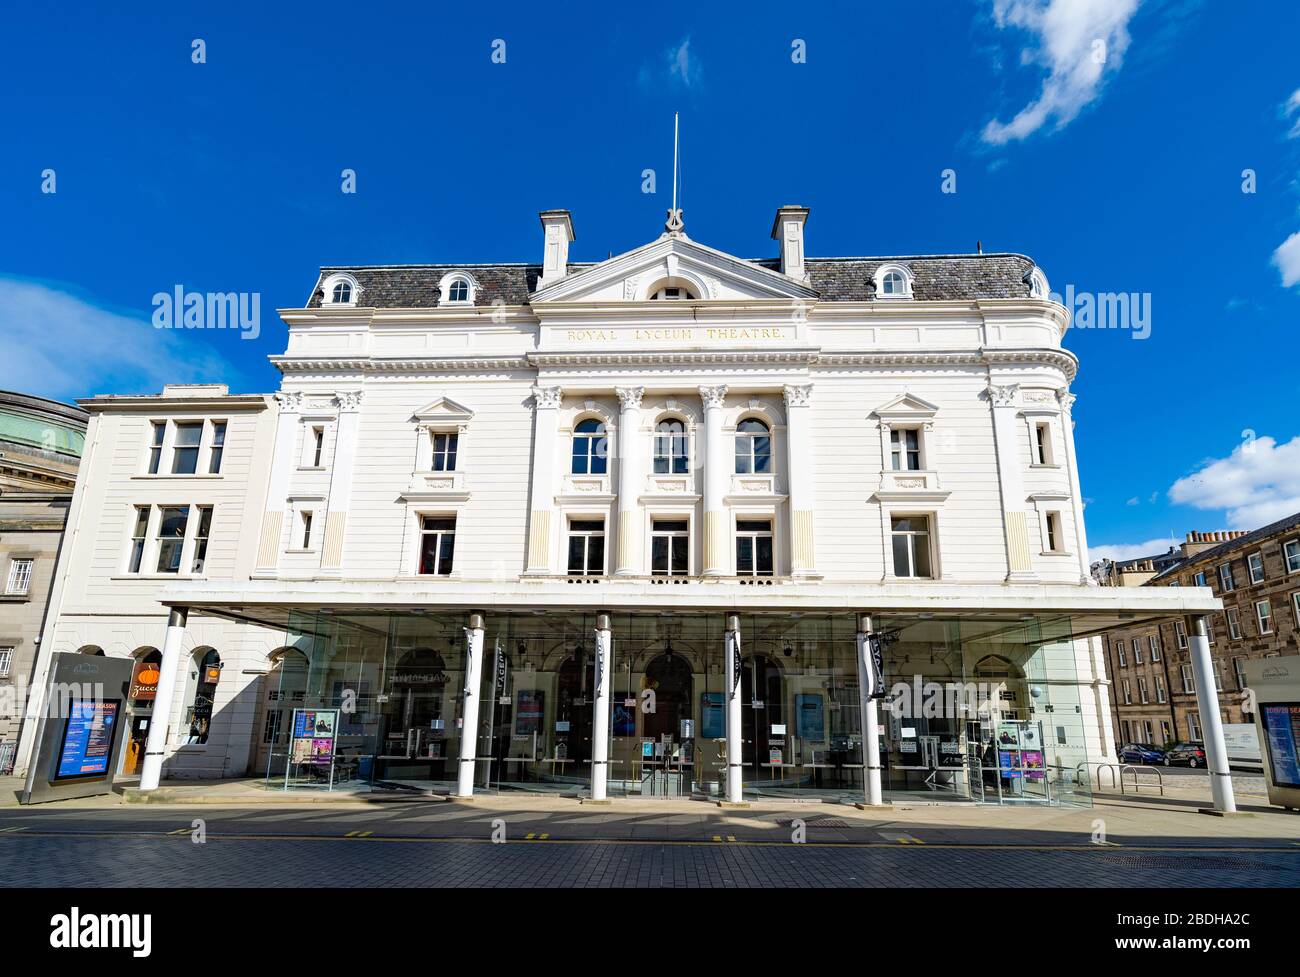 Außenansicht des Royal Lyceum Theatre in Edinburgh, Schottland, Großbritannien Stockfoto